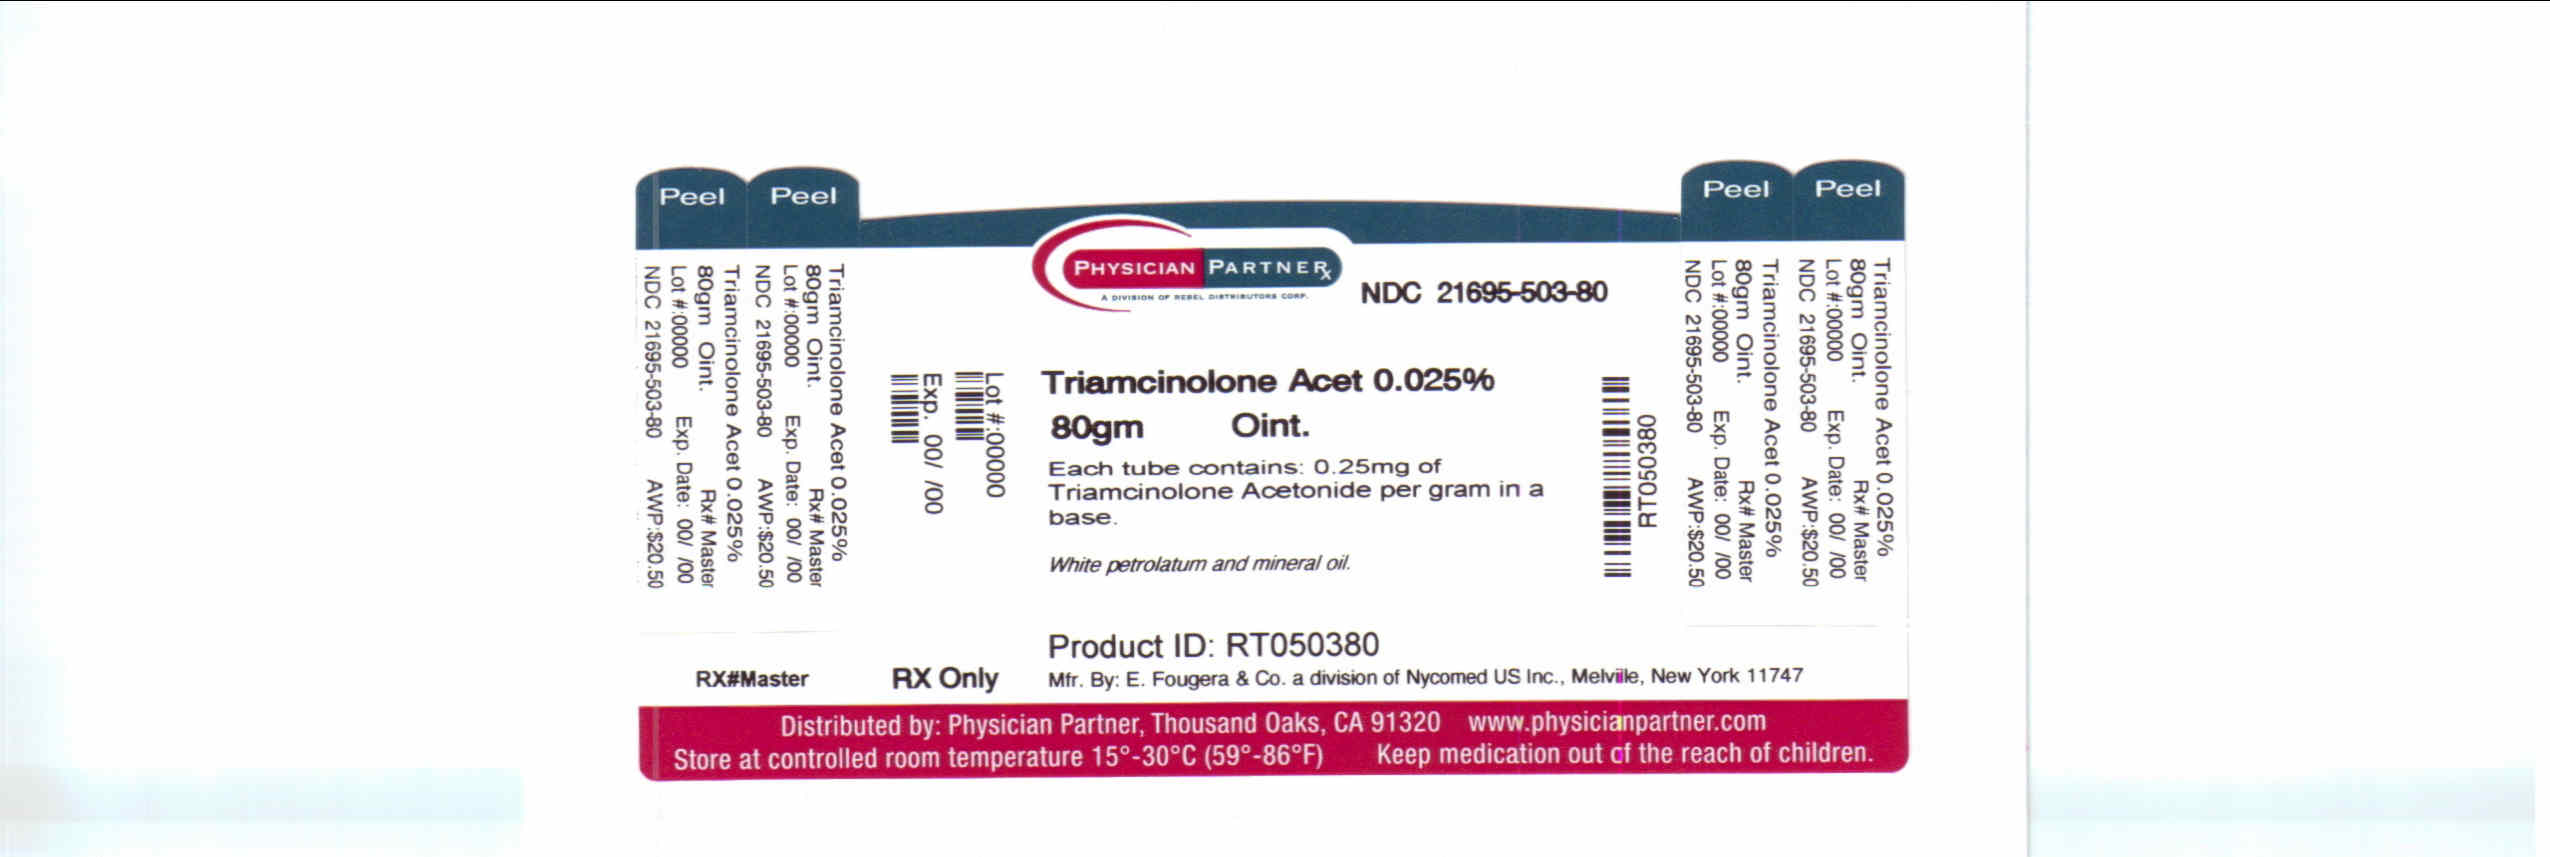 Triamcinolone Acet 0.025%